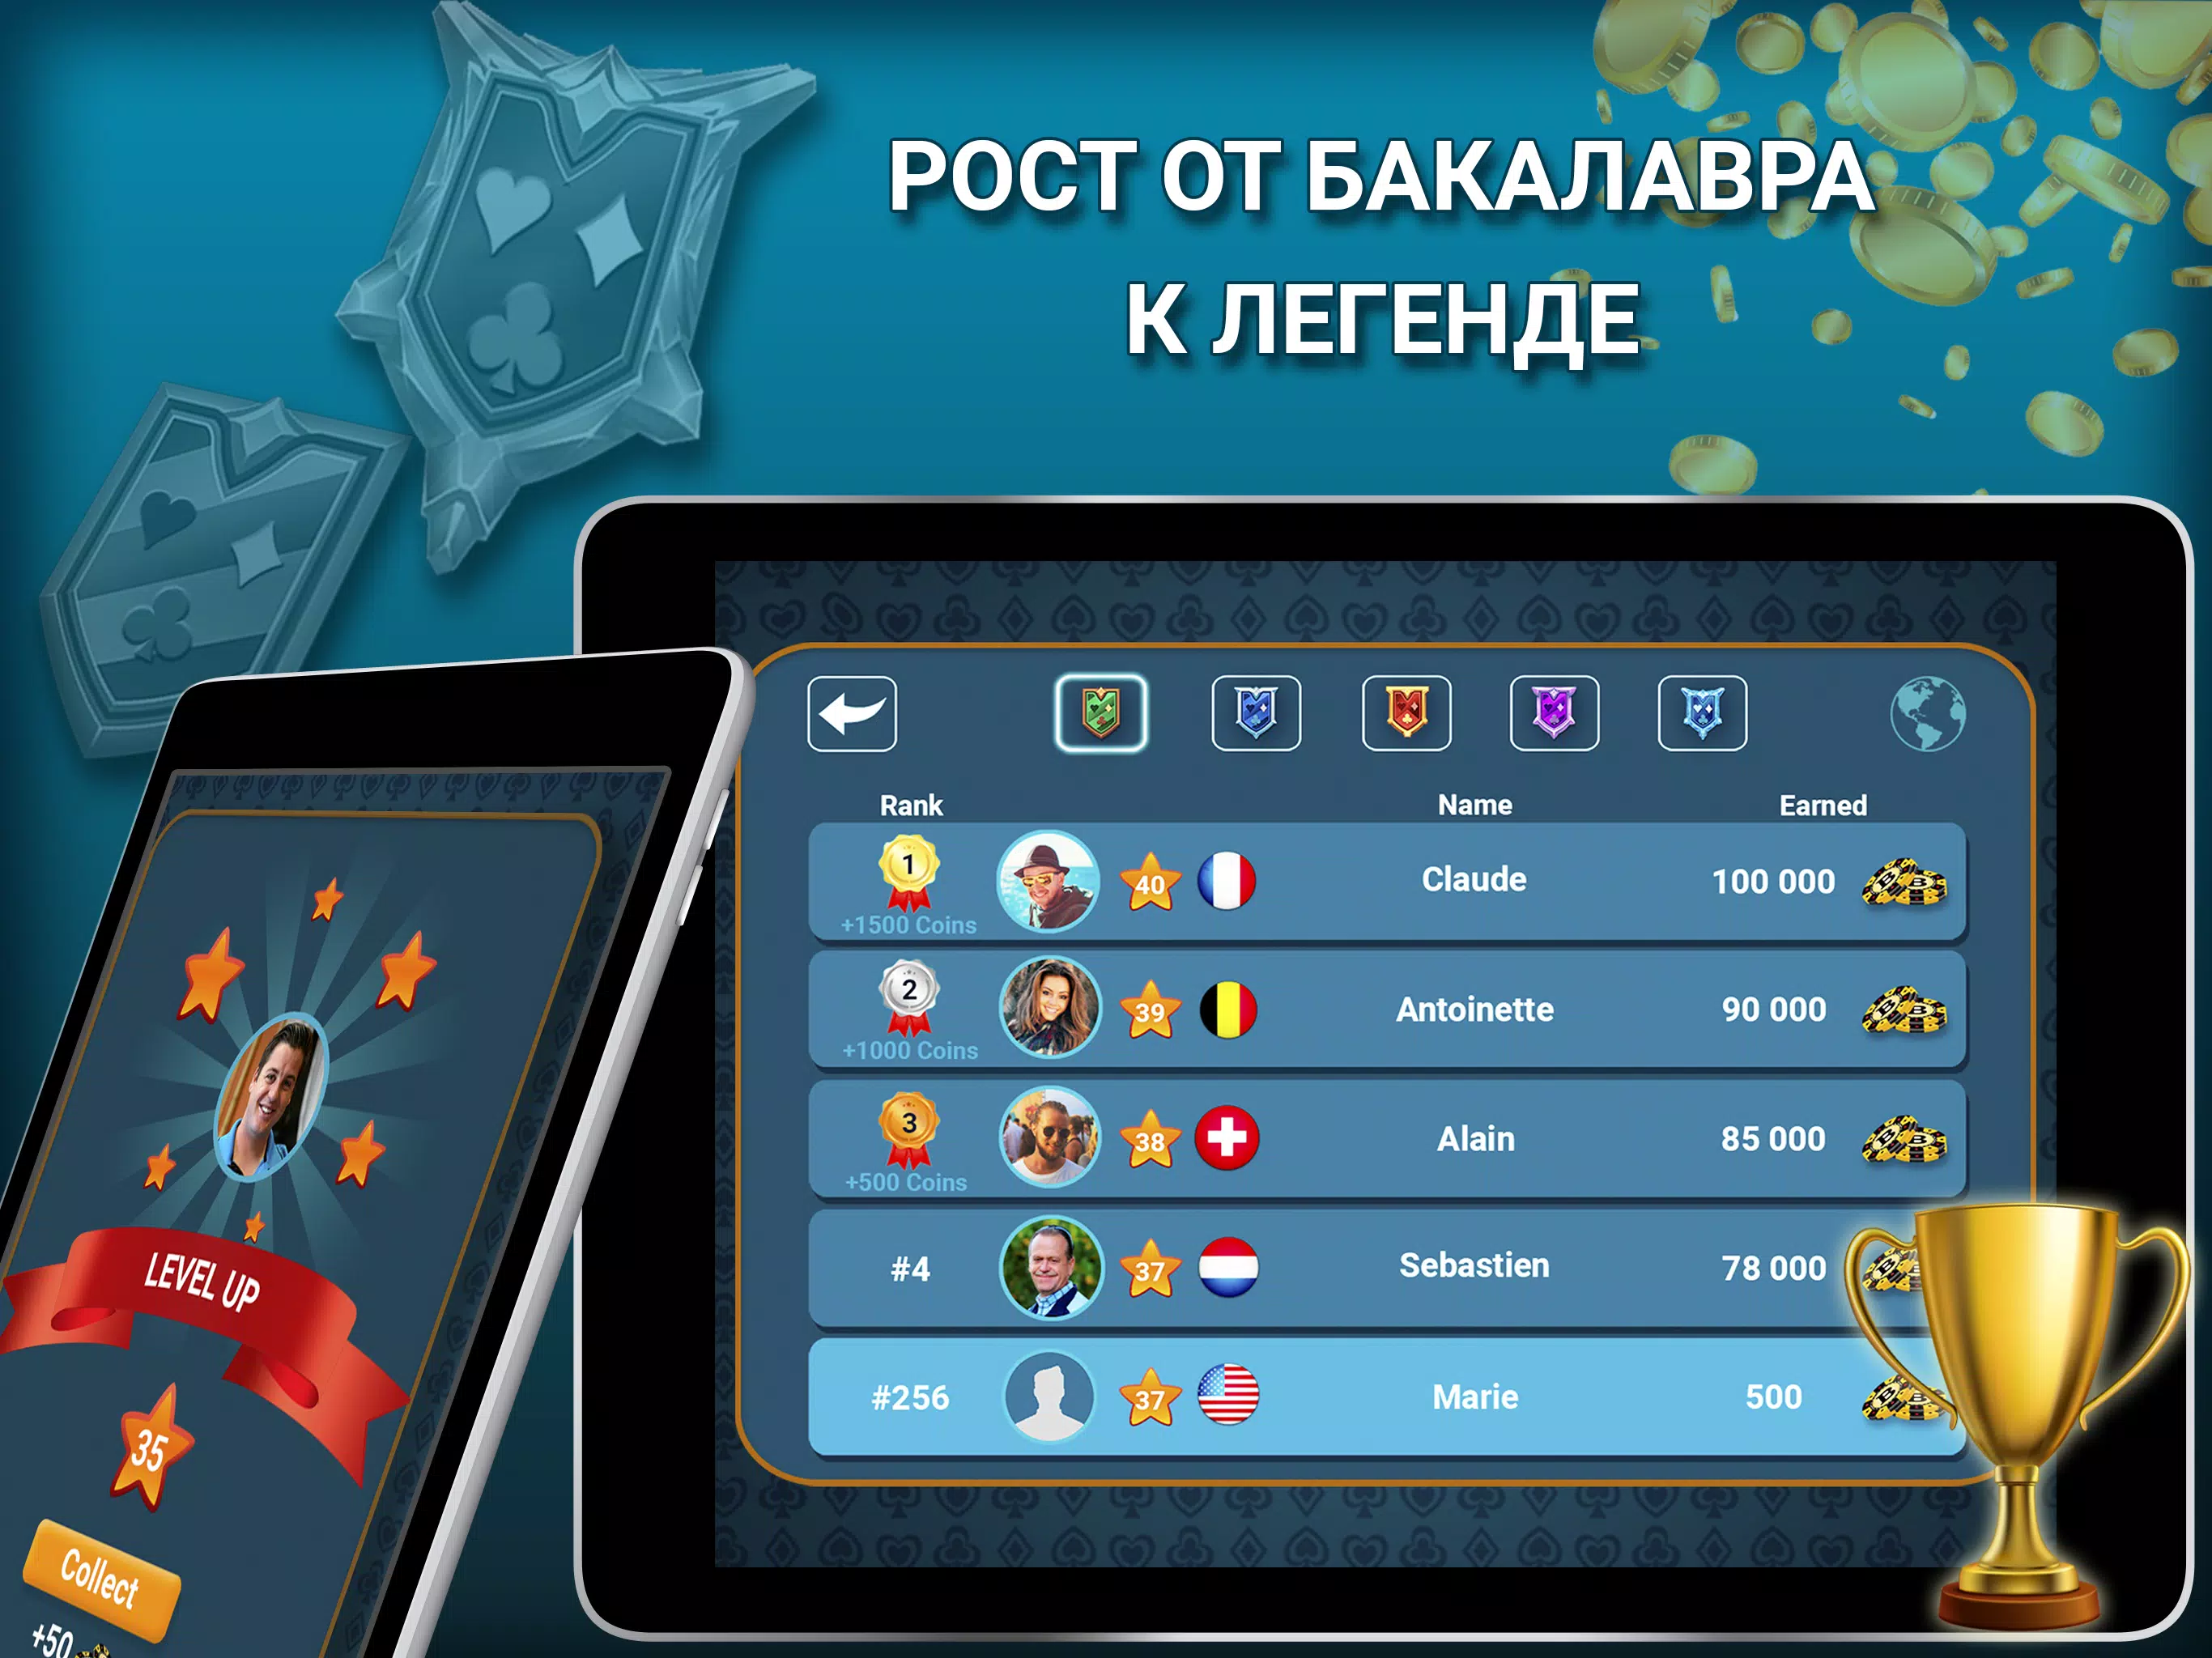 Блот карты онлайн играть бесплатно спорт украина ставки на спорт лайв